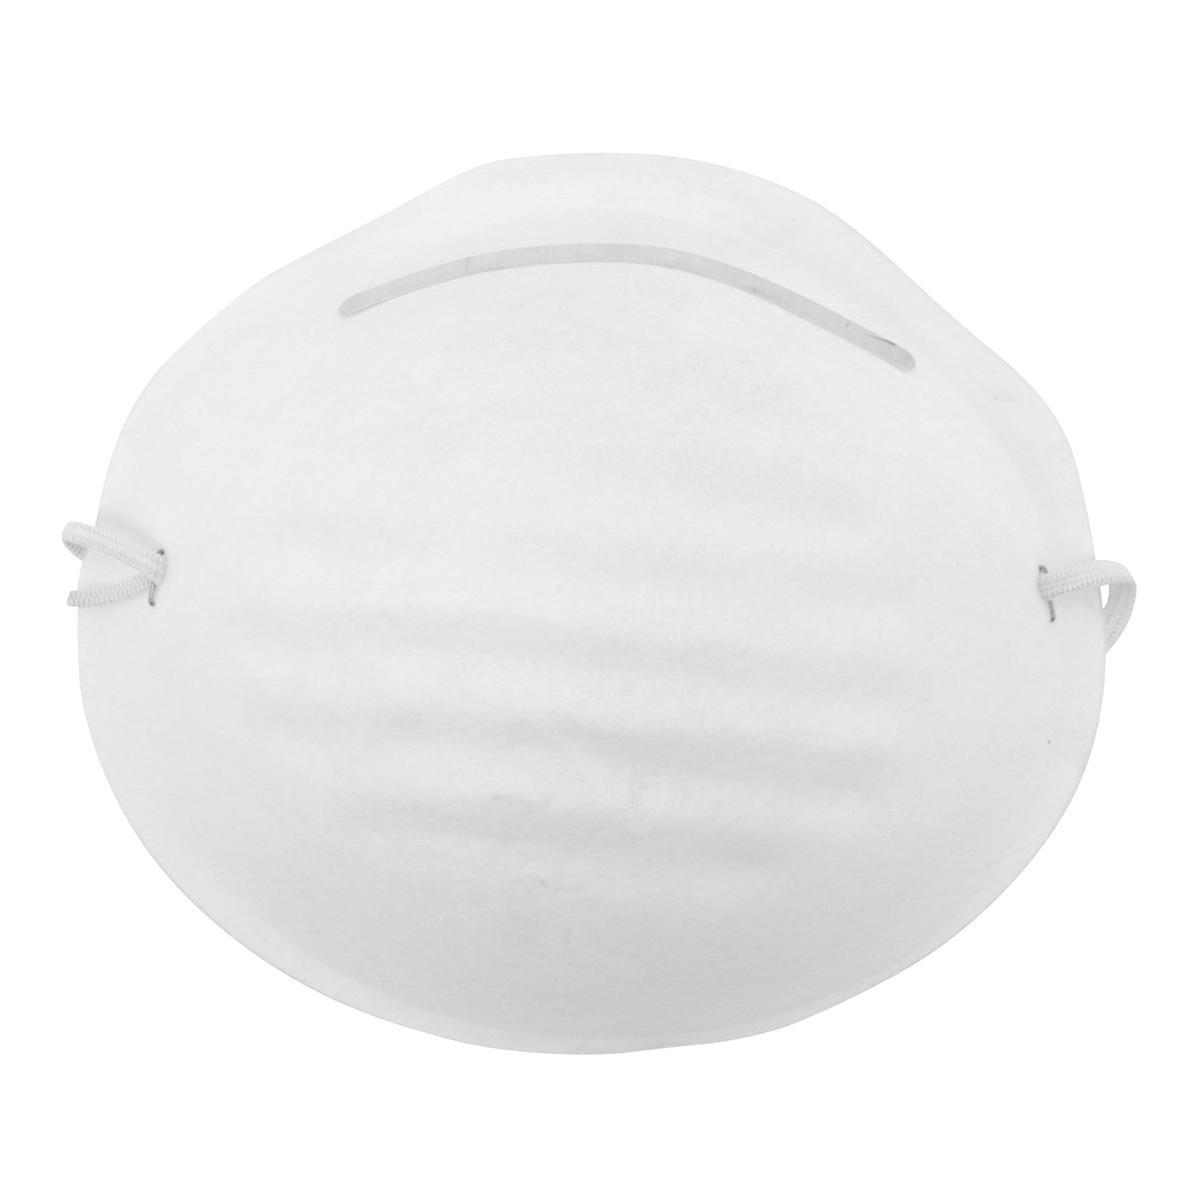 5 masques d'hygiène pour bricolage - 0 x 0 x 0 cm - Blanc